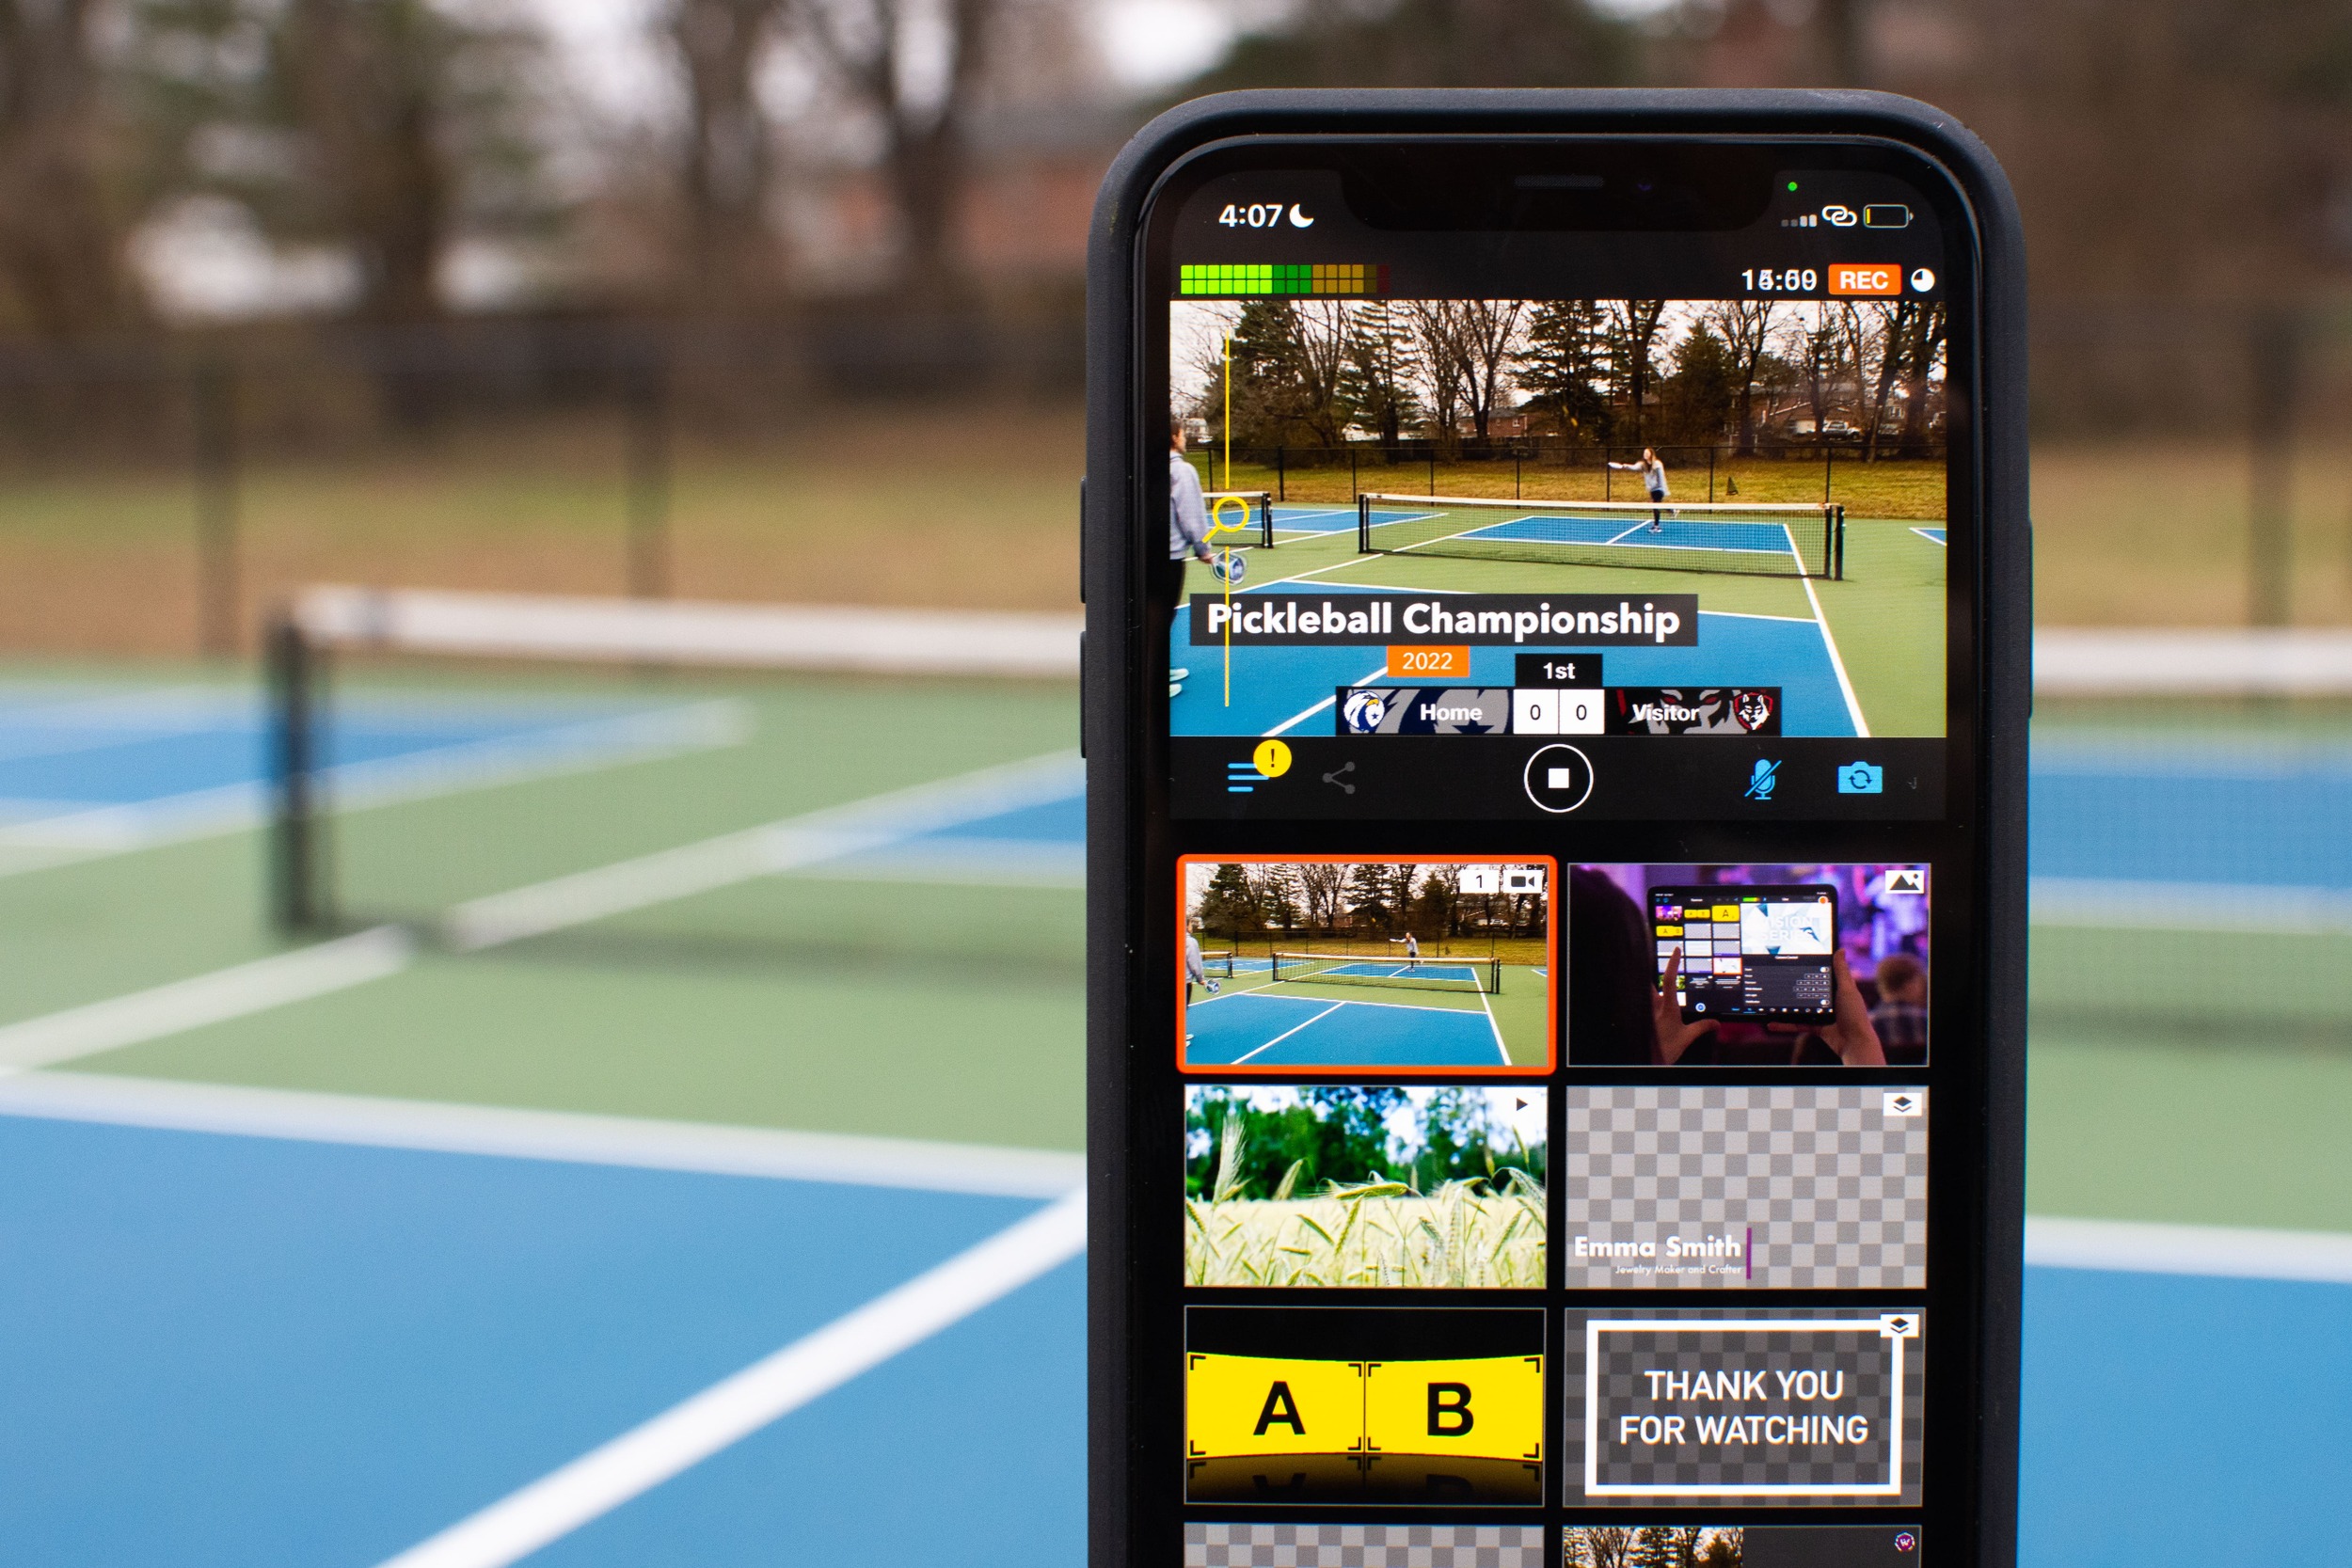 Live Streamer app - For Mobile